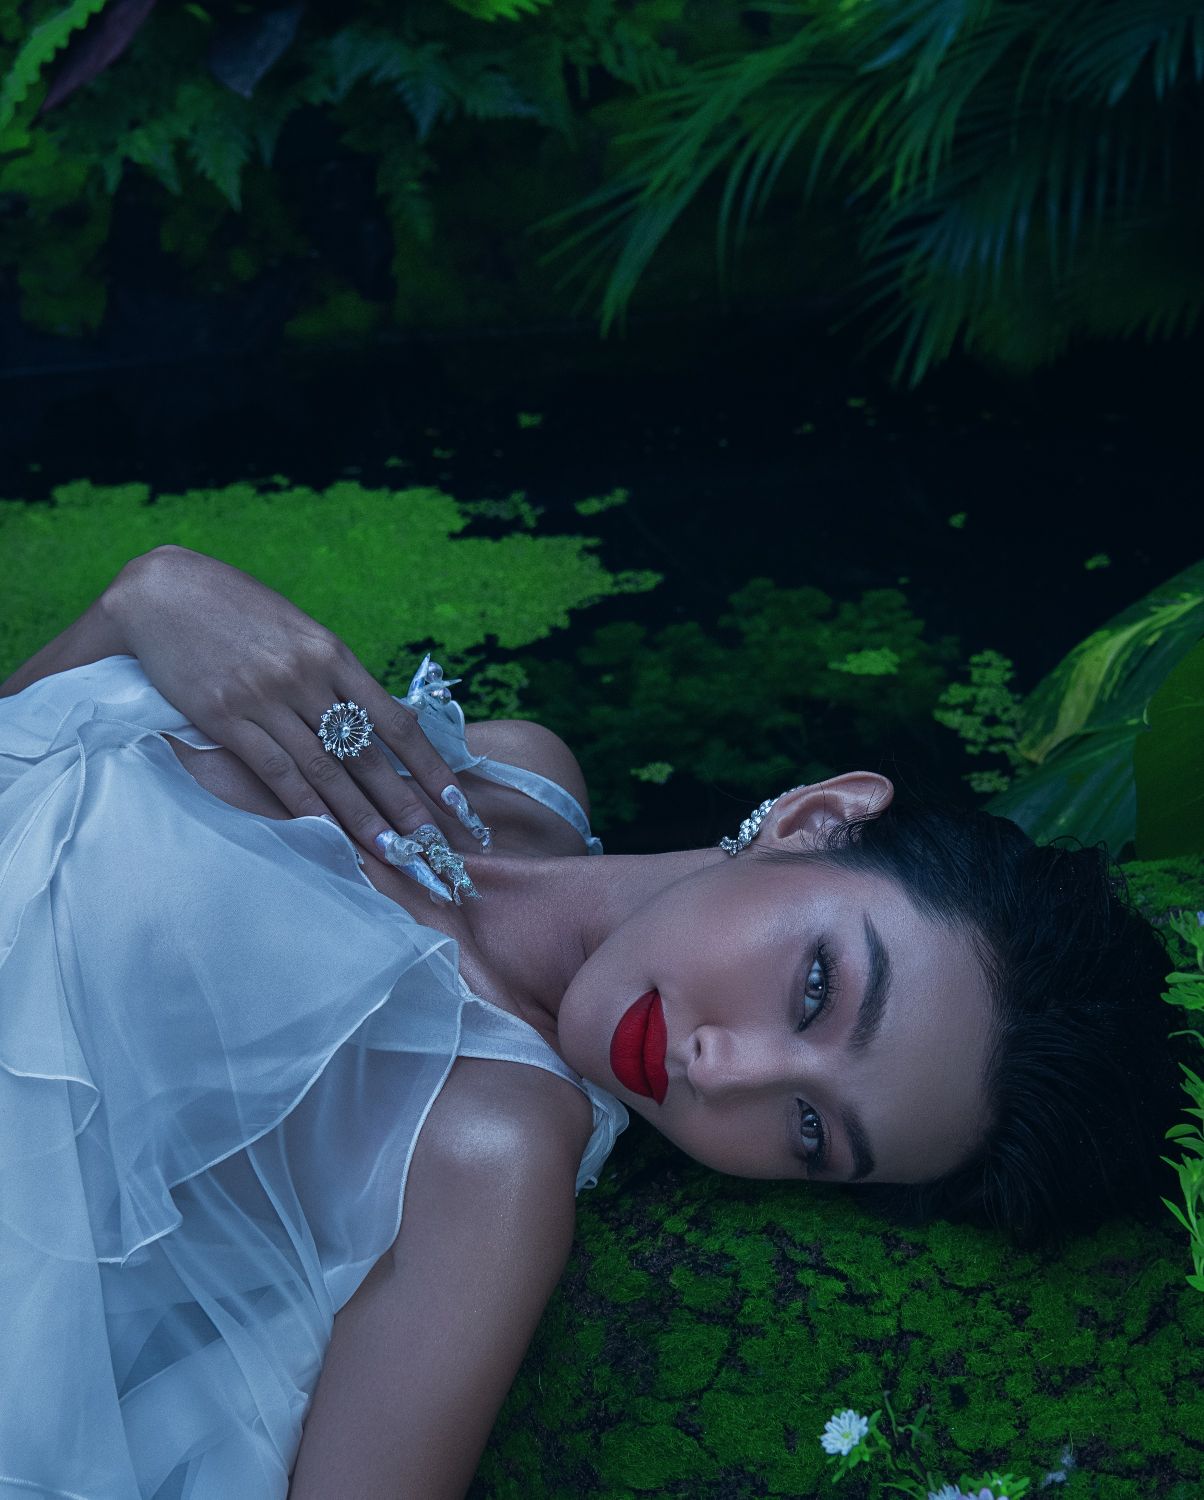 HOA HAU THUY TIEN 5 Diện trang phục xuyên thấu, Hoa hậu Thùy Tiên nóng bỏng thả dáng dưới hồ nước